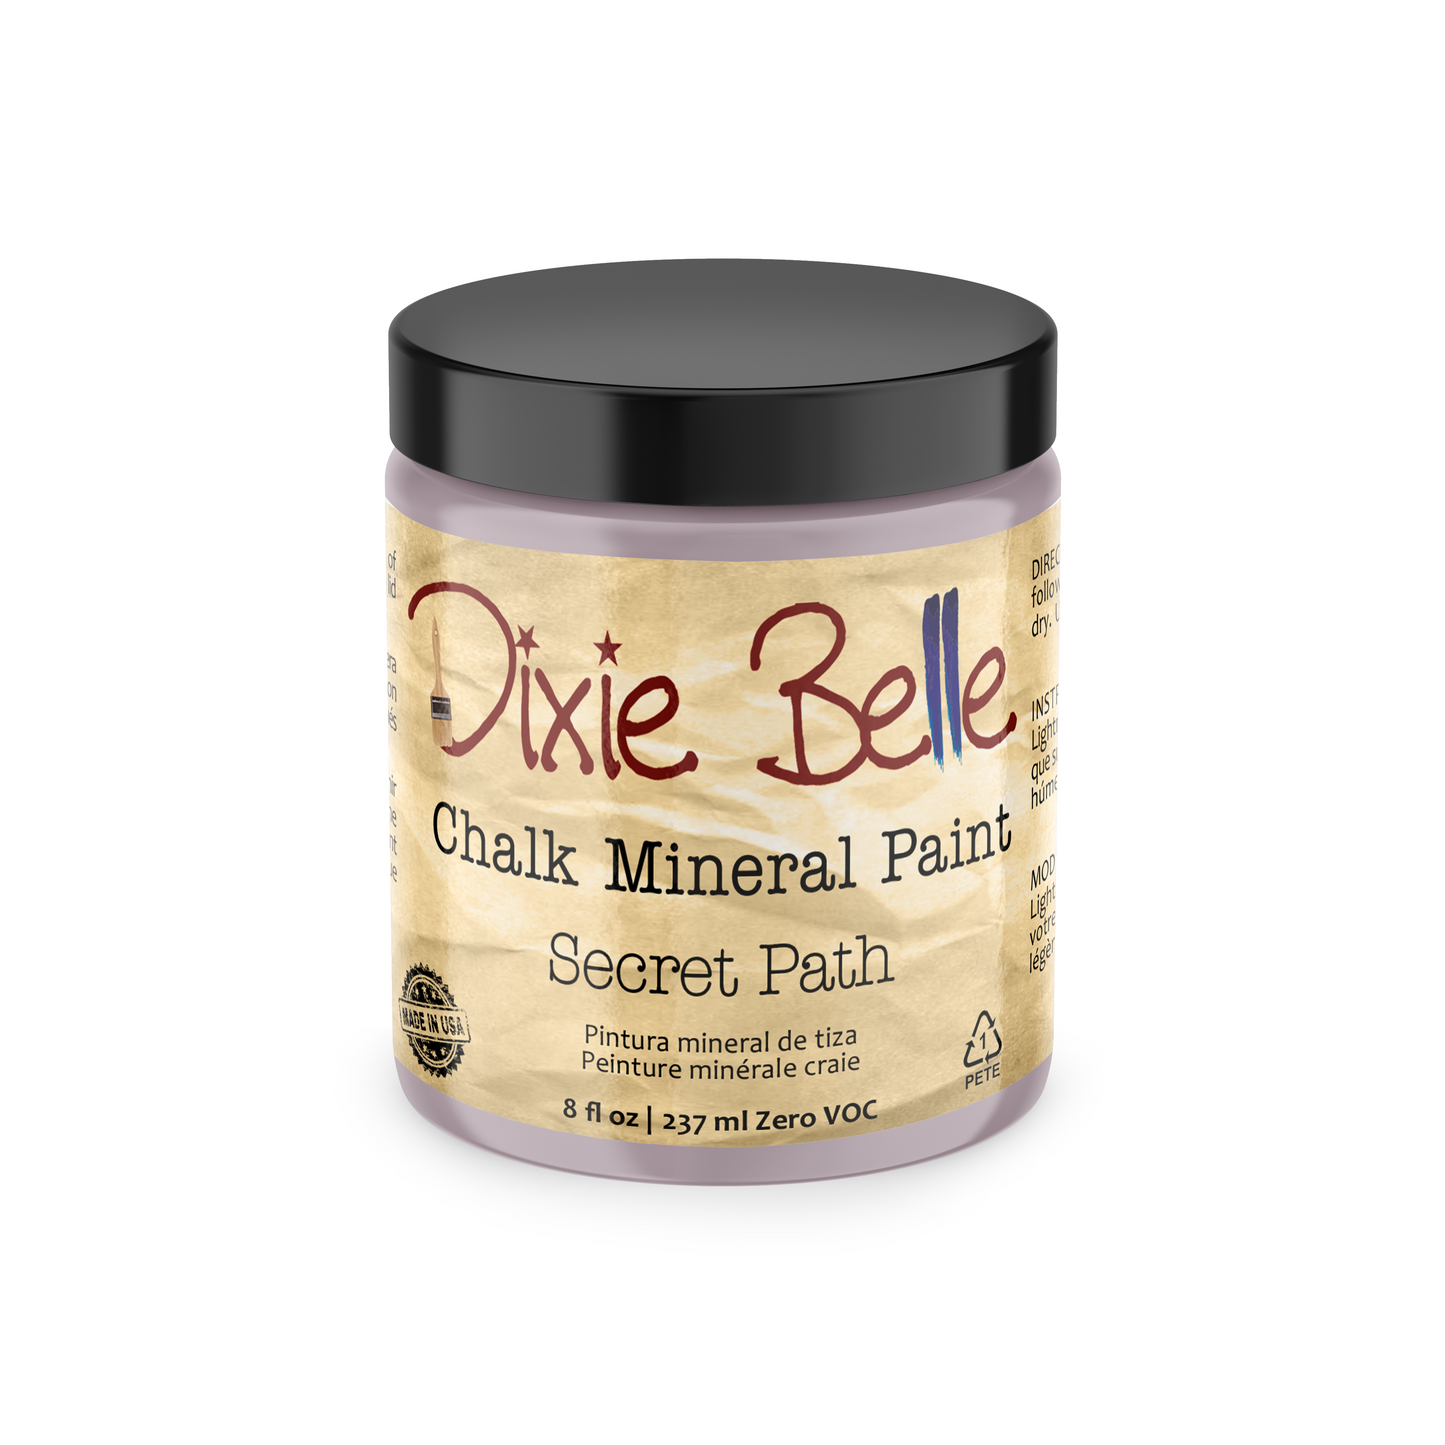 NEW - Secret Path - Dixie Belle Chalk Mineral Paint